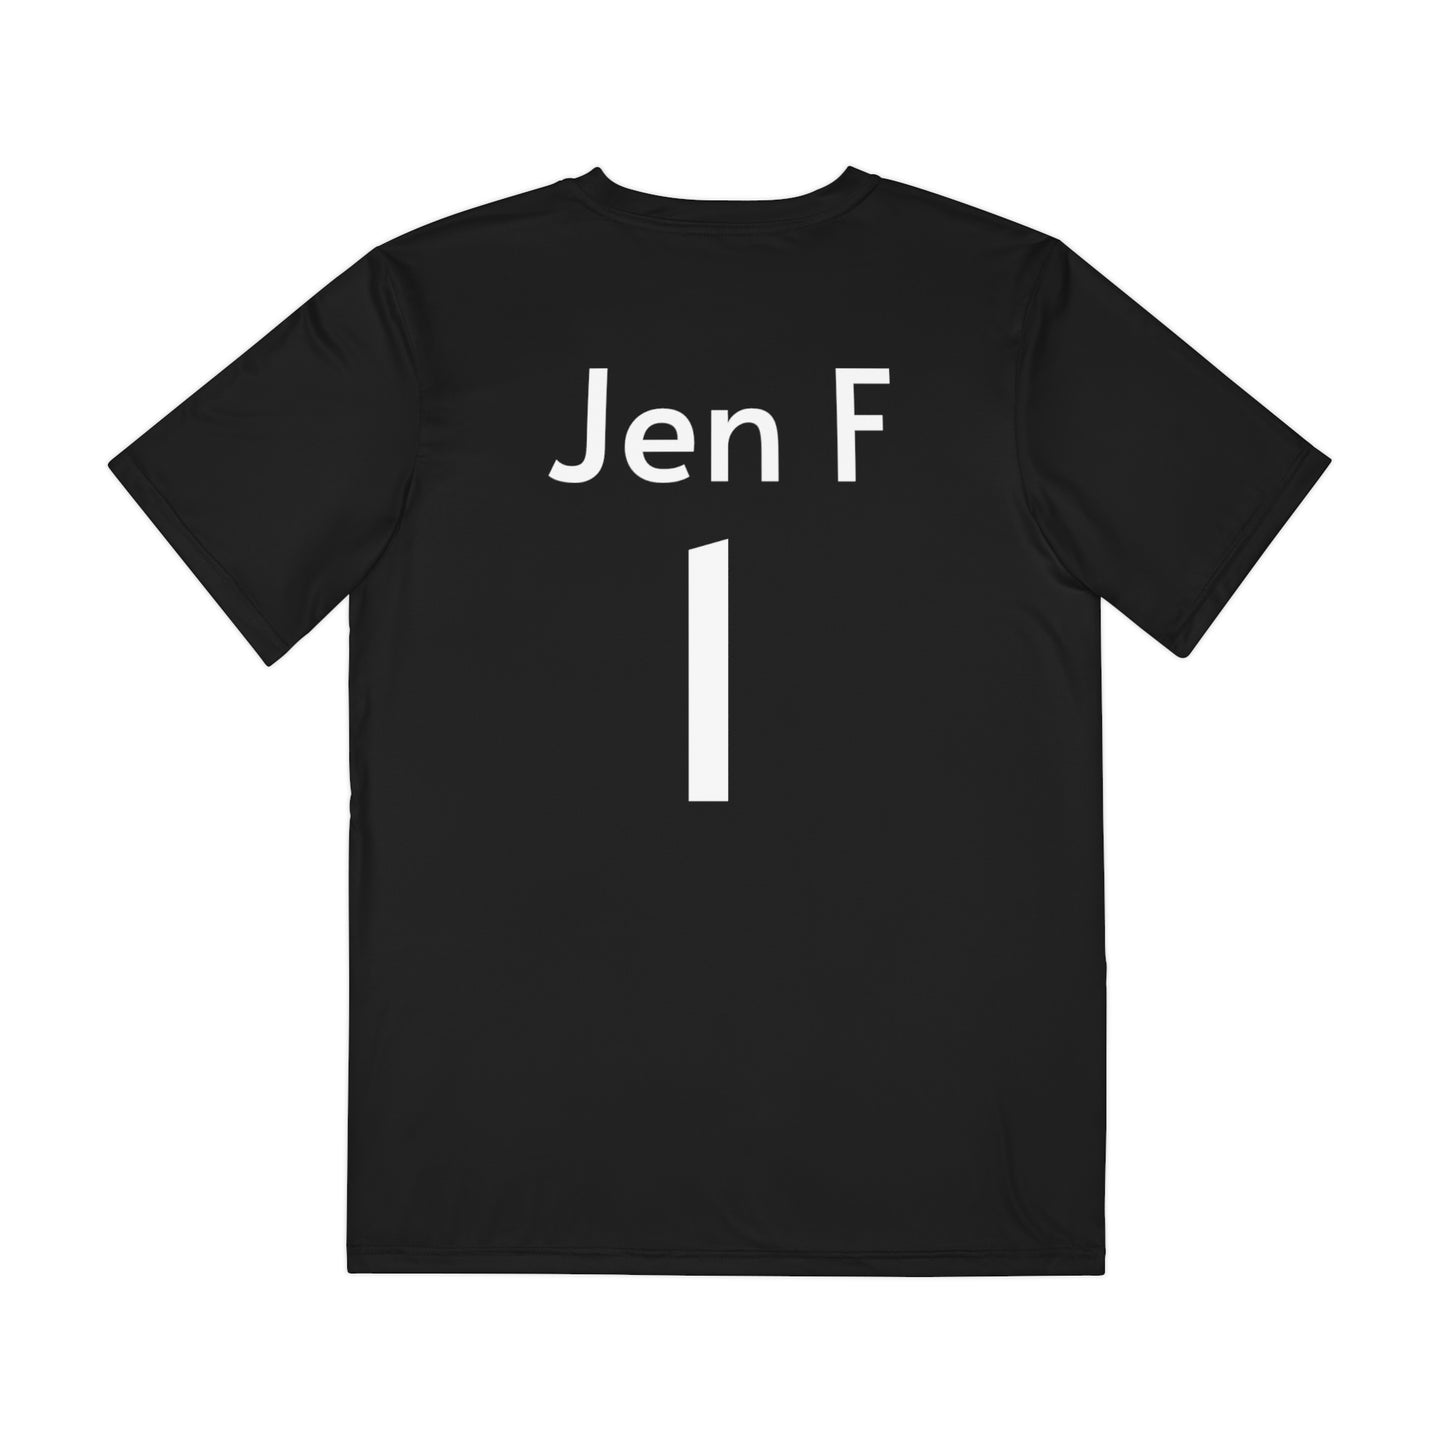 Jen f Team shirt